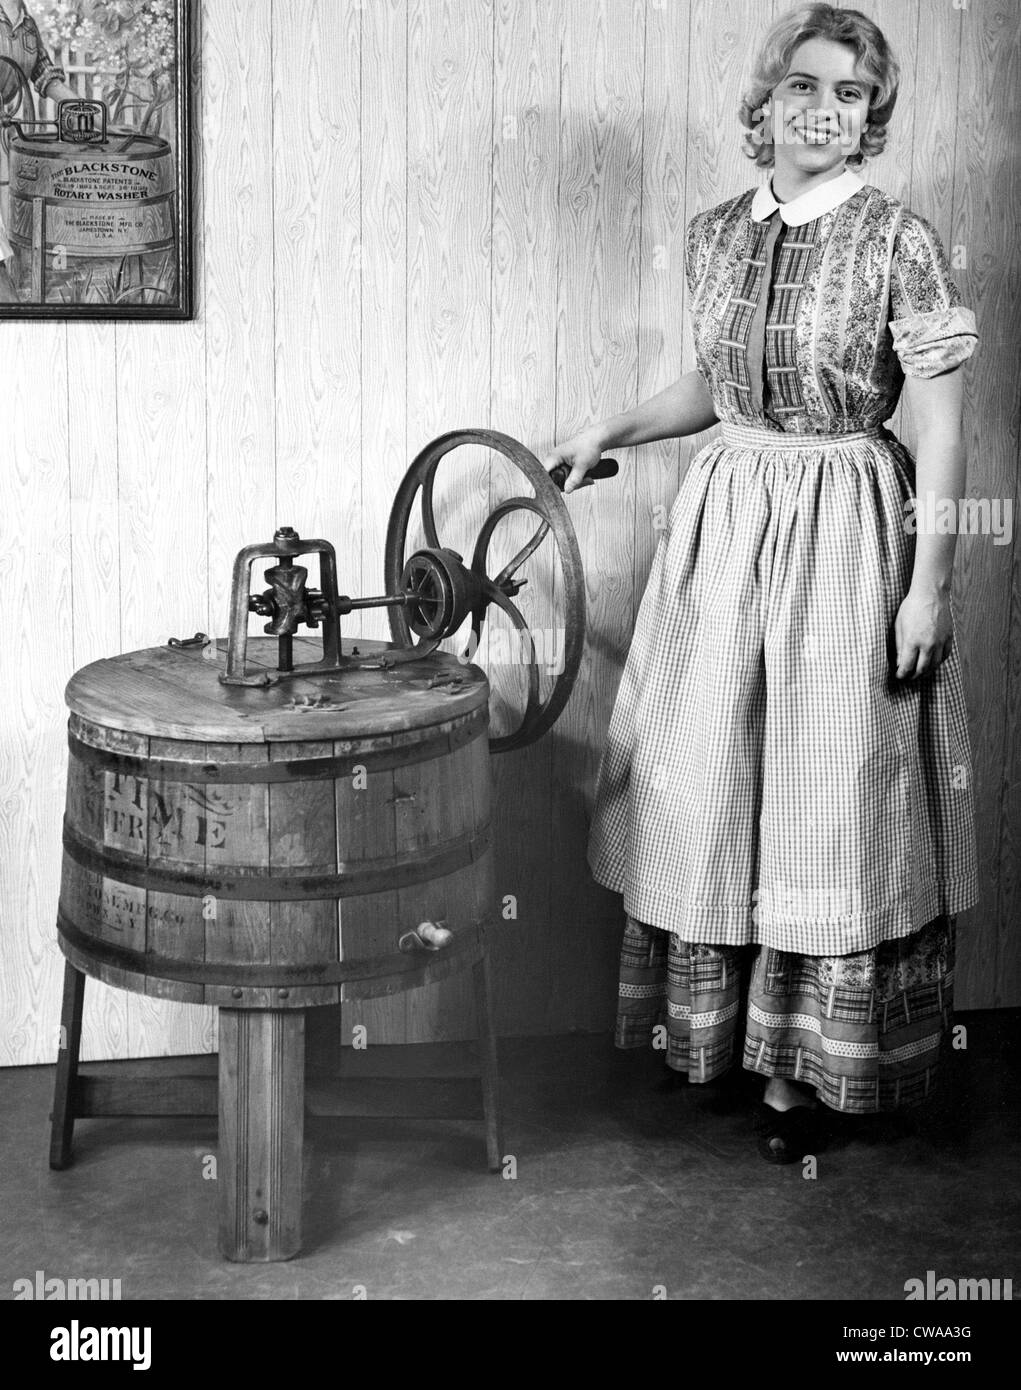 Blackstone Corp, Jamestown, N.Y le plus ancien fabricant de rondelles.. Avec la permission de la CSU : Archives / Everett Collection Banque D'Images